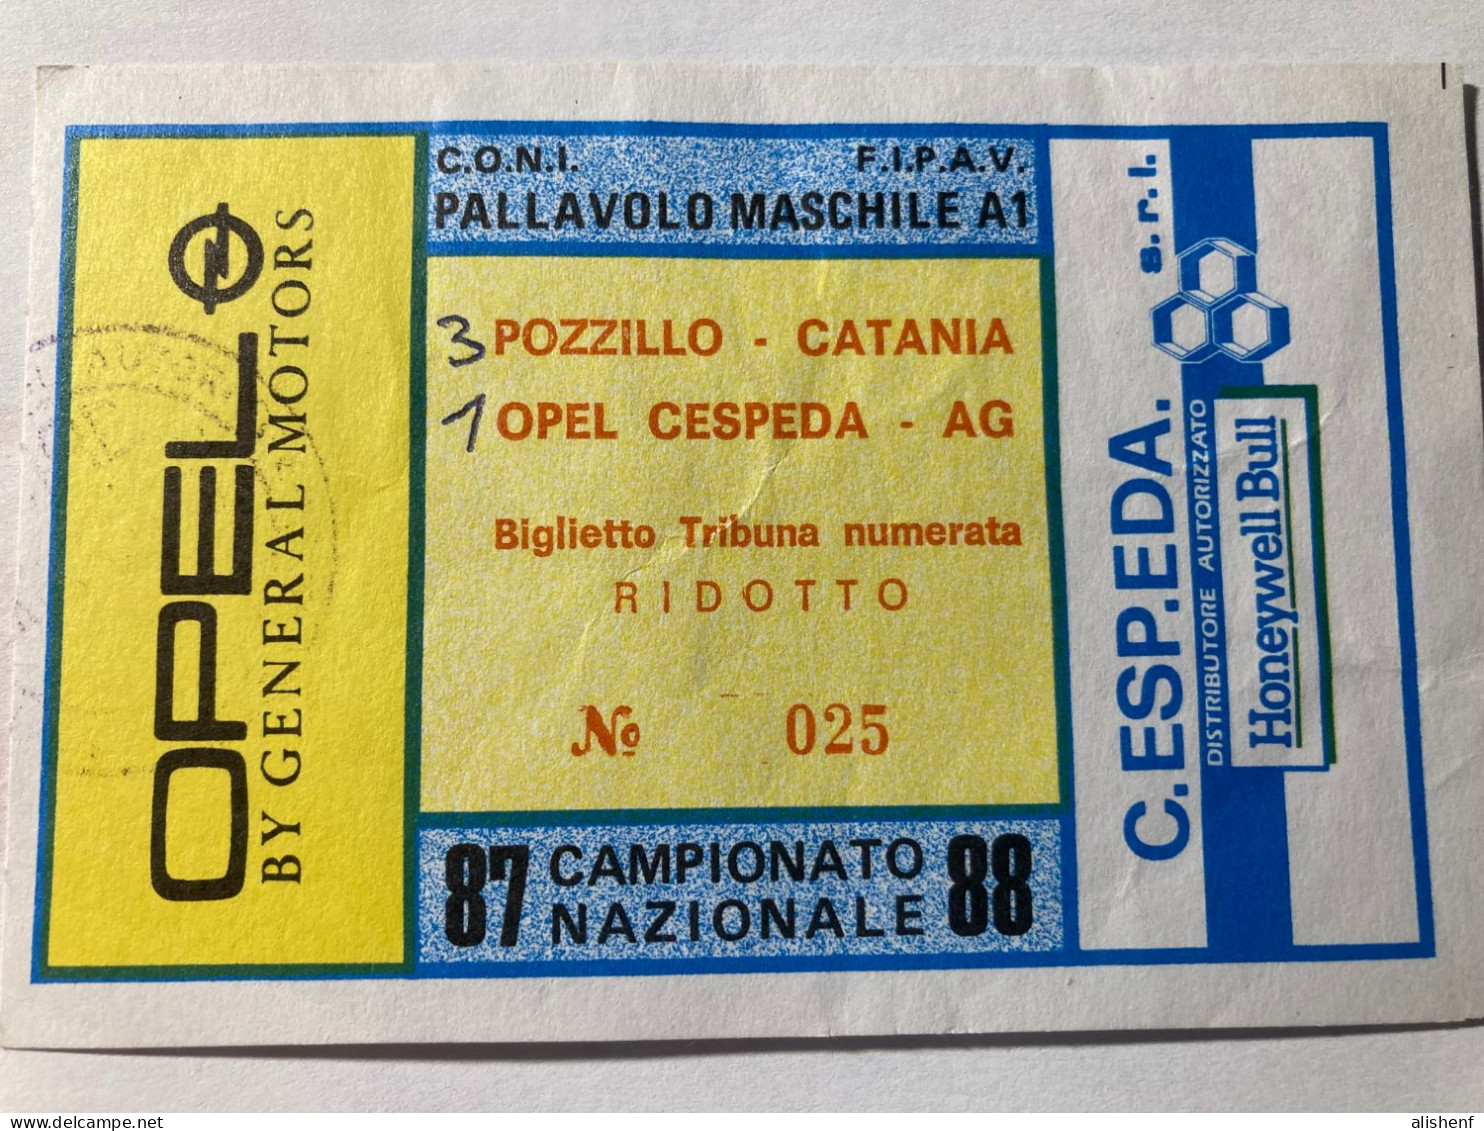 Biglietto Pallavolo Mascile Serie A1 Opel Cespeda Agrigento Pozzillo Catania Campionato 1987-88 - Toegangskaarten